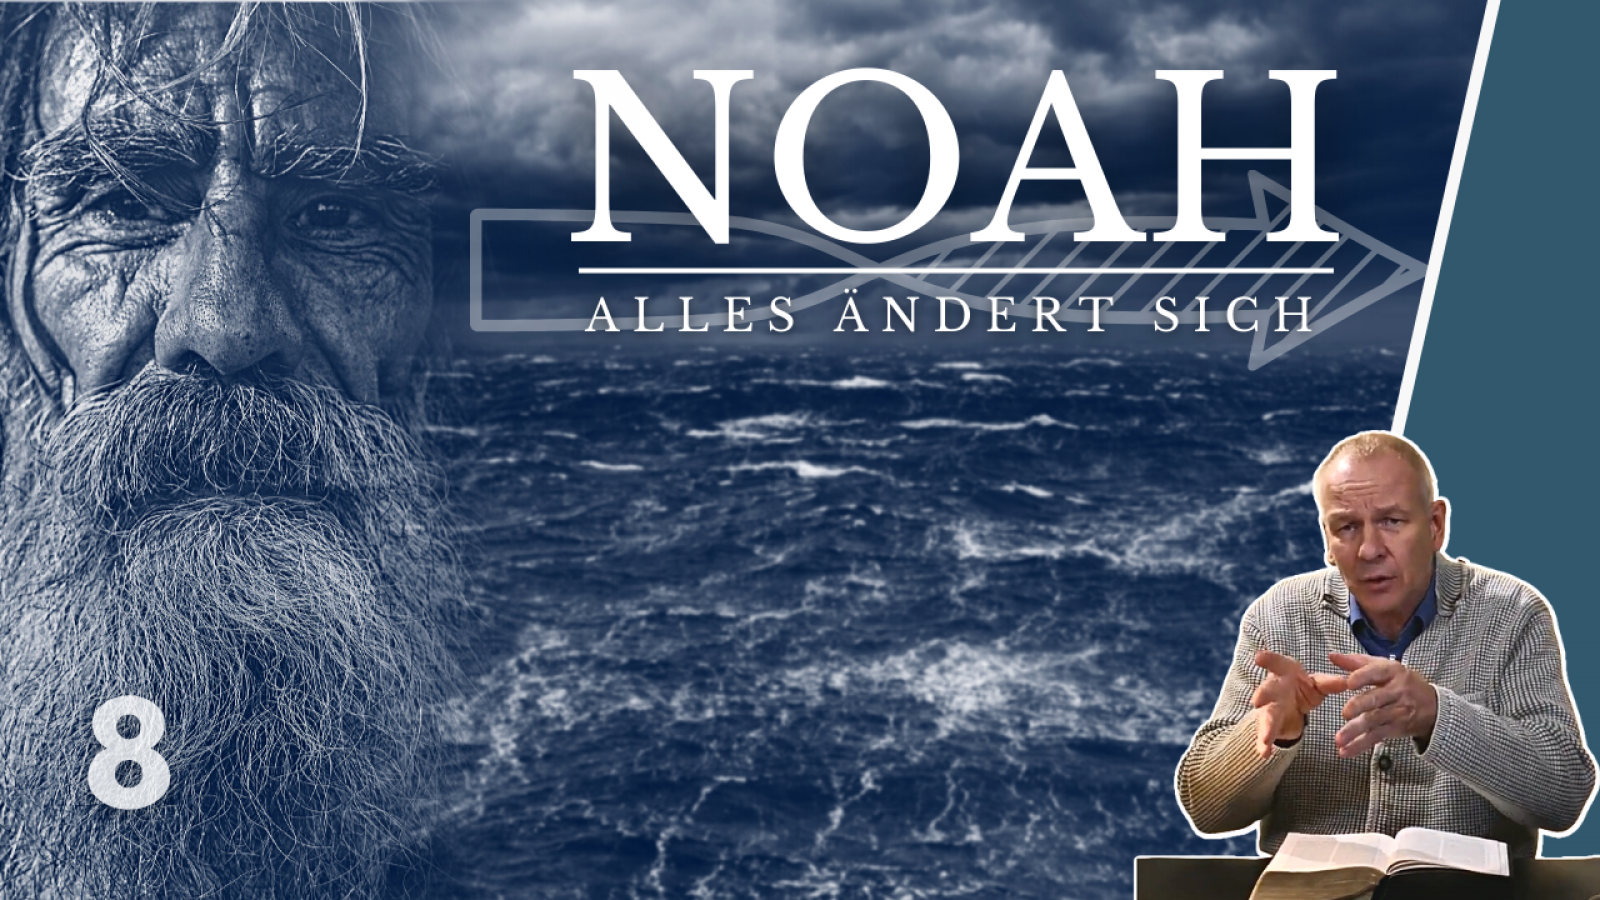 Noah - Alles ändert sich